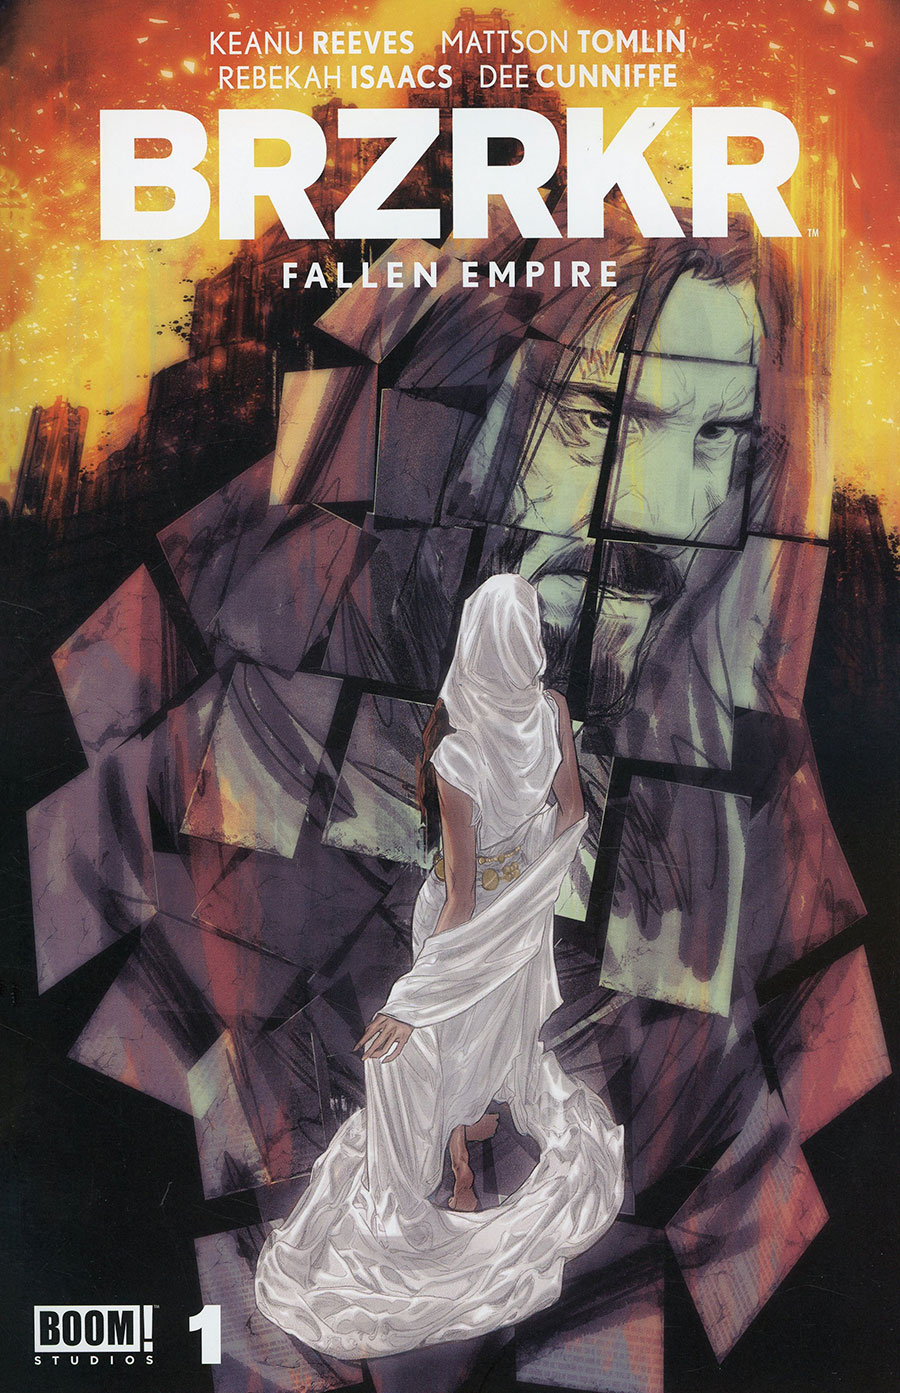 BRZRKR Fallen Empire #1 (One Shot) Cover B Variant Joelle Jones Cover